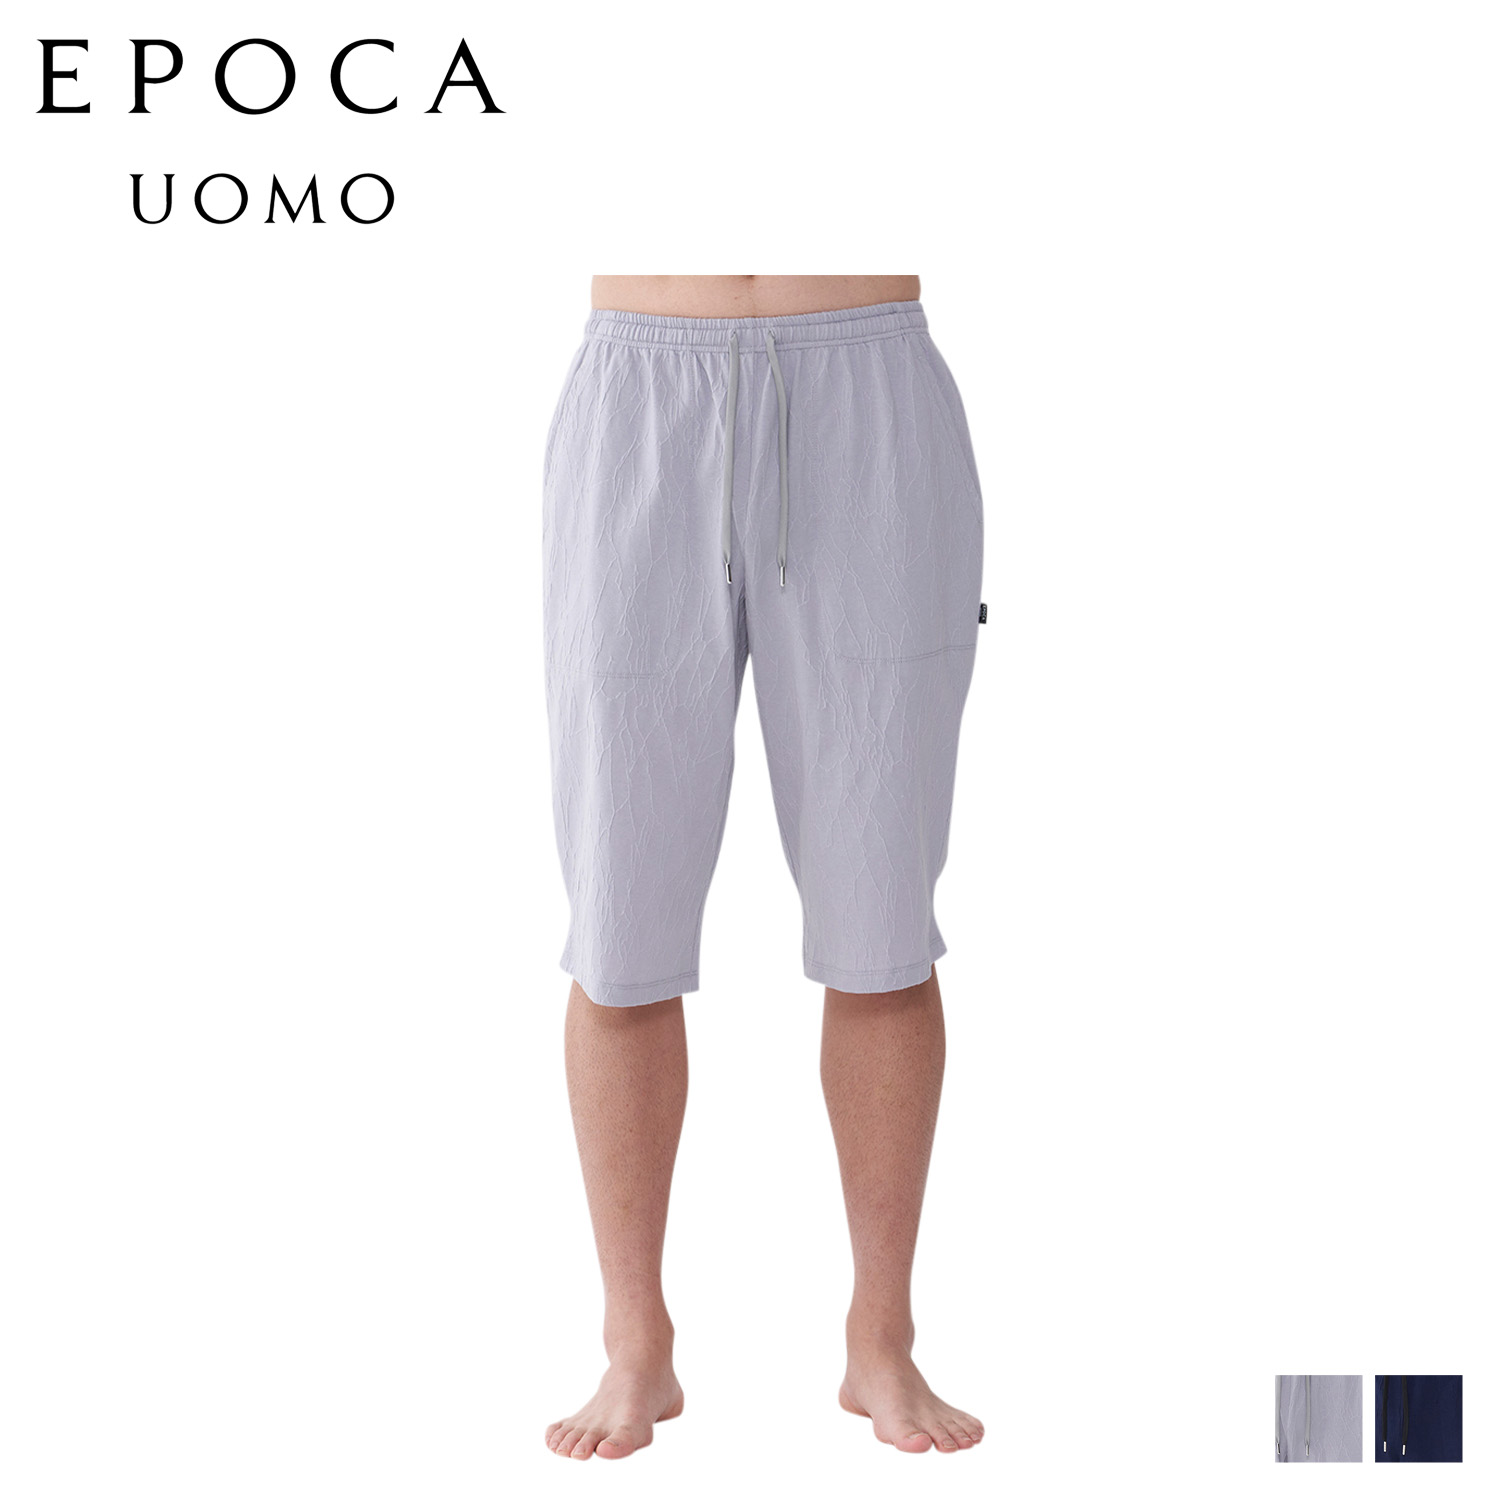 EPOCA UOMO HALF PANTS エポカ ウォモ ハーフパンツ ショートパンツ パジャマ ホームウェア ルームウェア メンズ ジャガード グレー ネイビー 0401-75